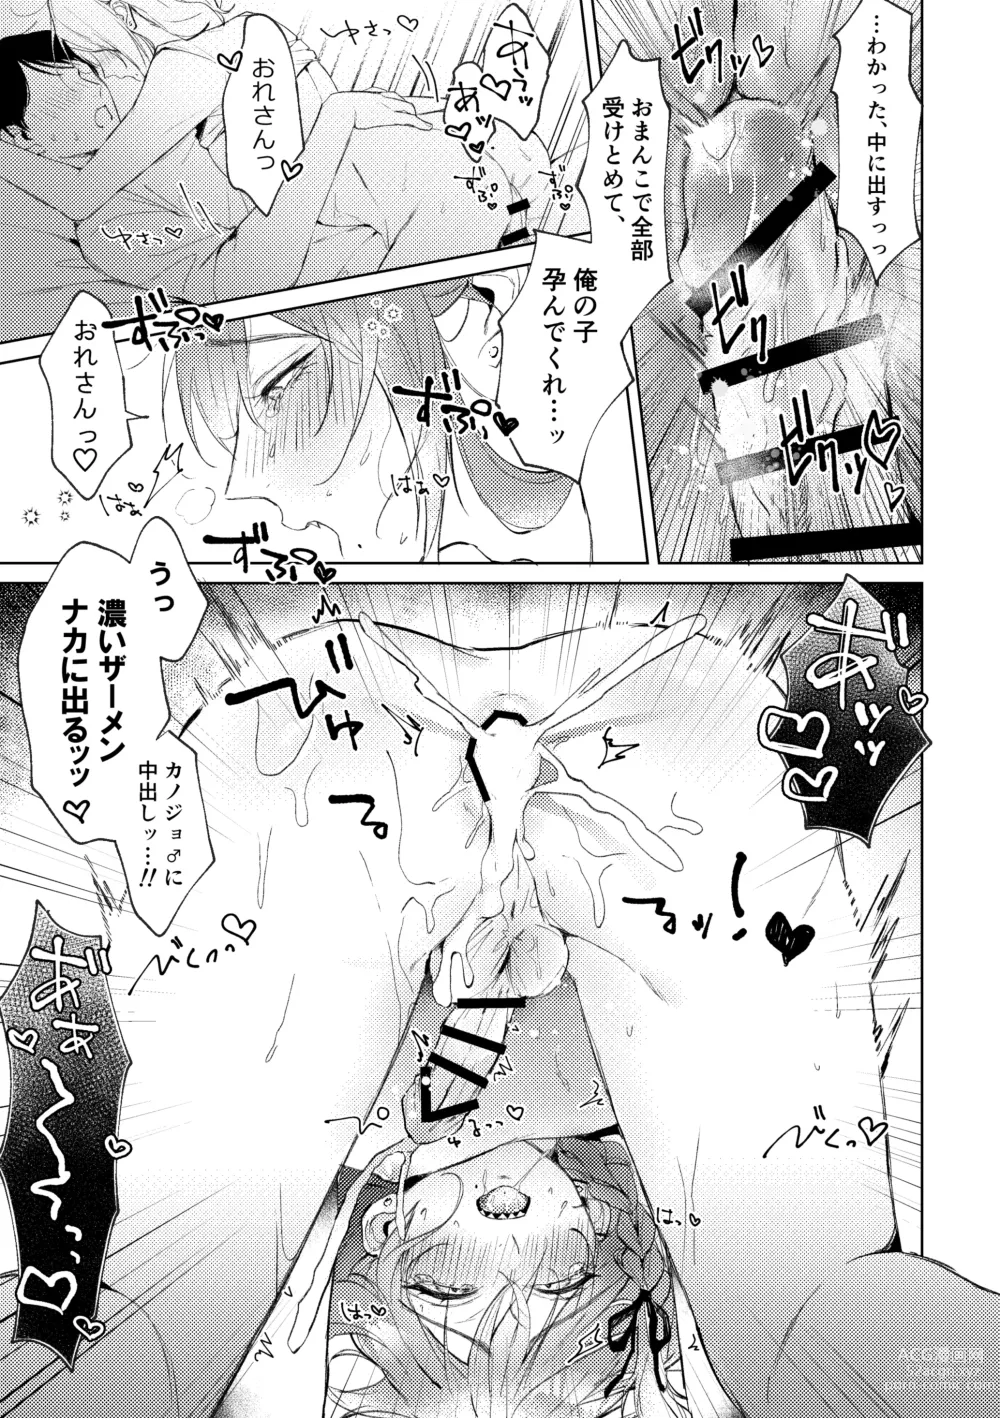 Page 34 of doujinshi Ore no Kanojo no Mayoi-kun.